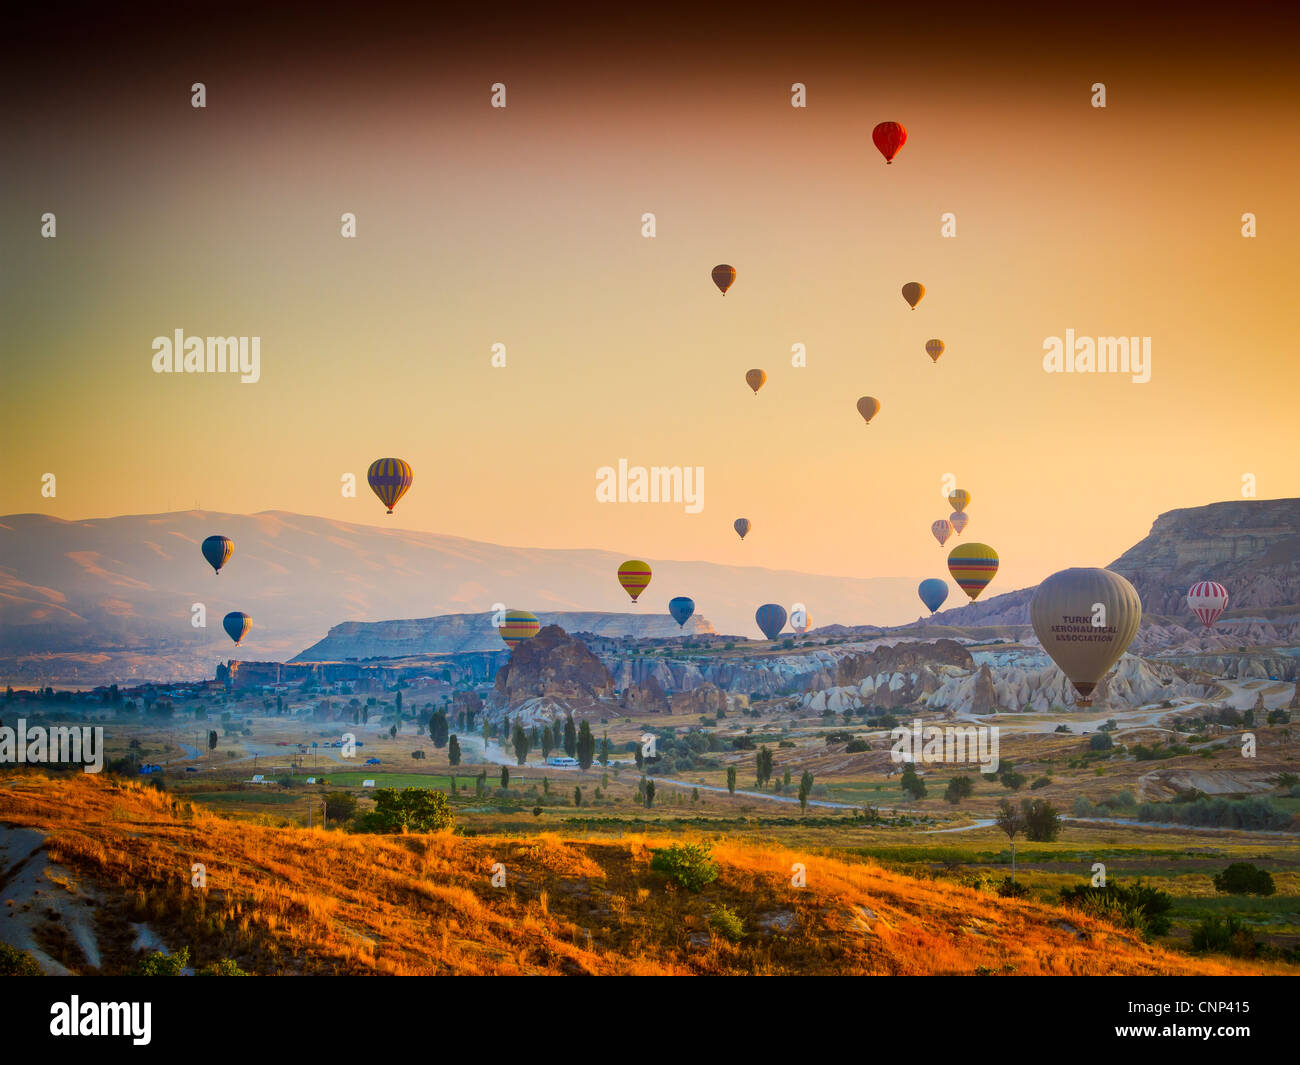 Ballon de aire caliente. Cappadocia, Turquía. Foto de stock